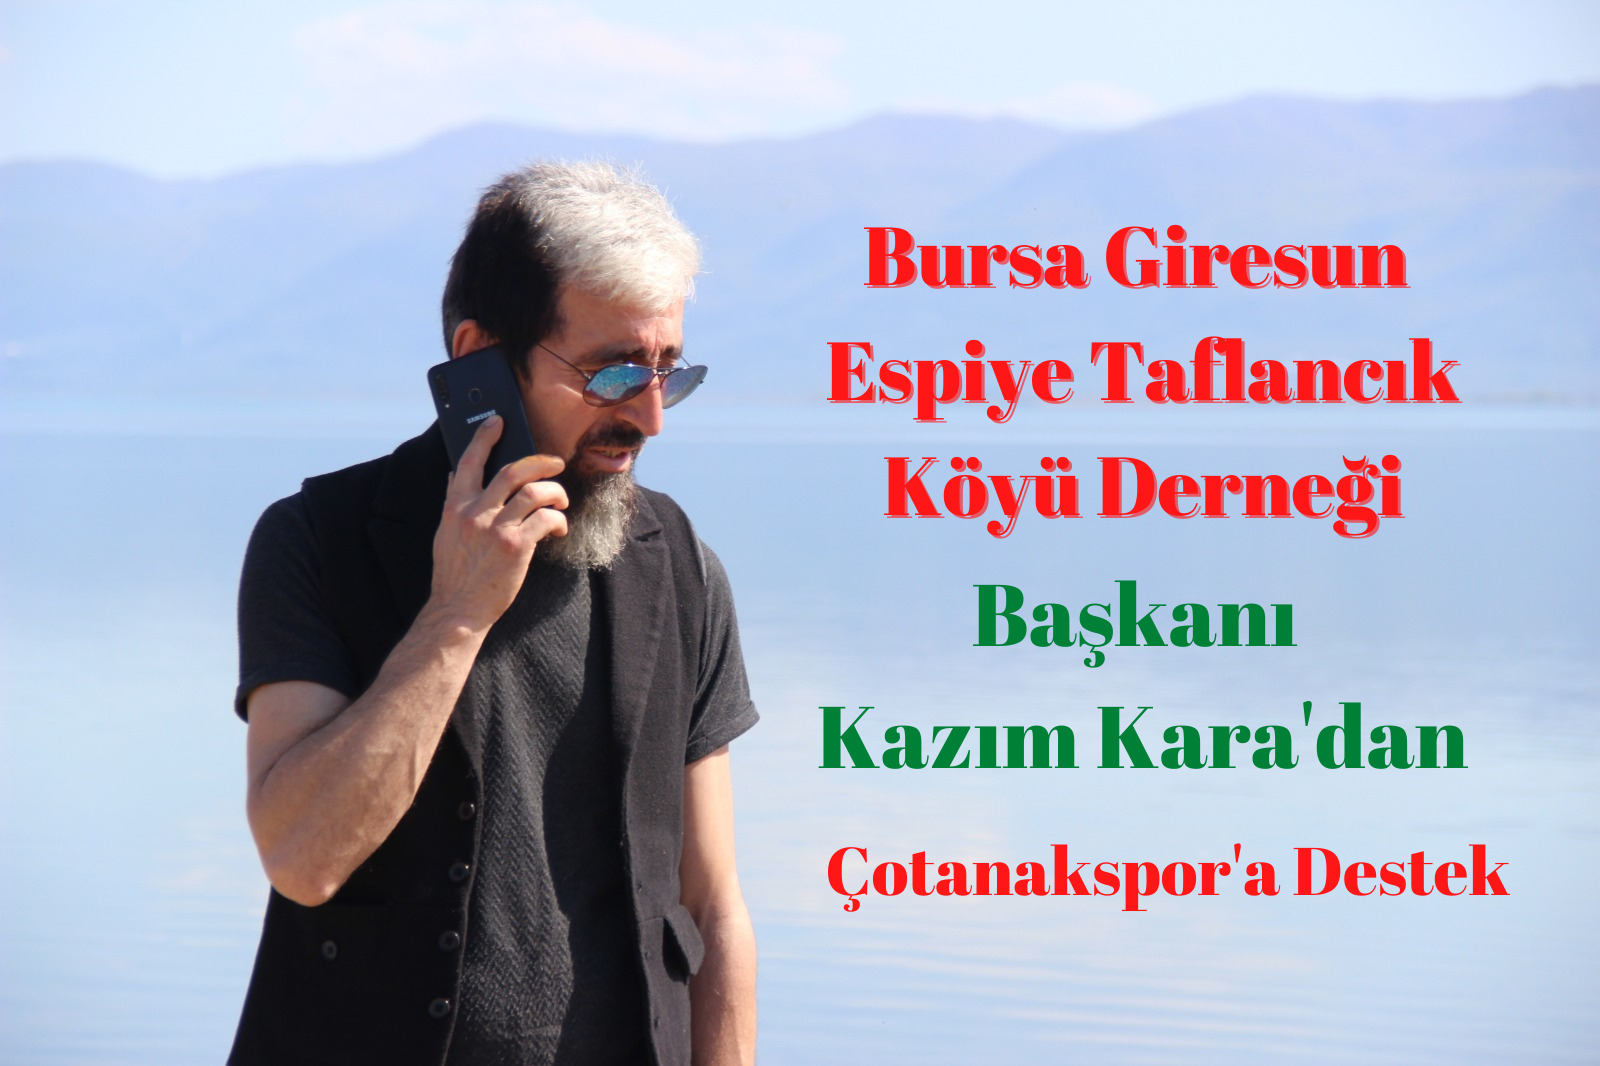 Taflancık Köyü Derneği Başkanı Kazım Kara’dan Çotanakspor’a destek